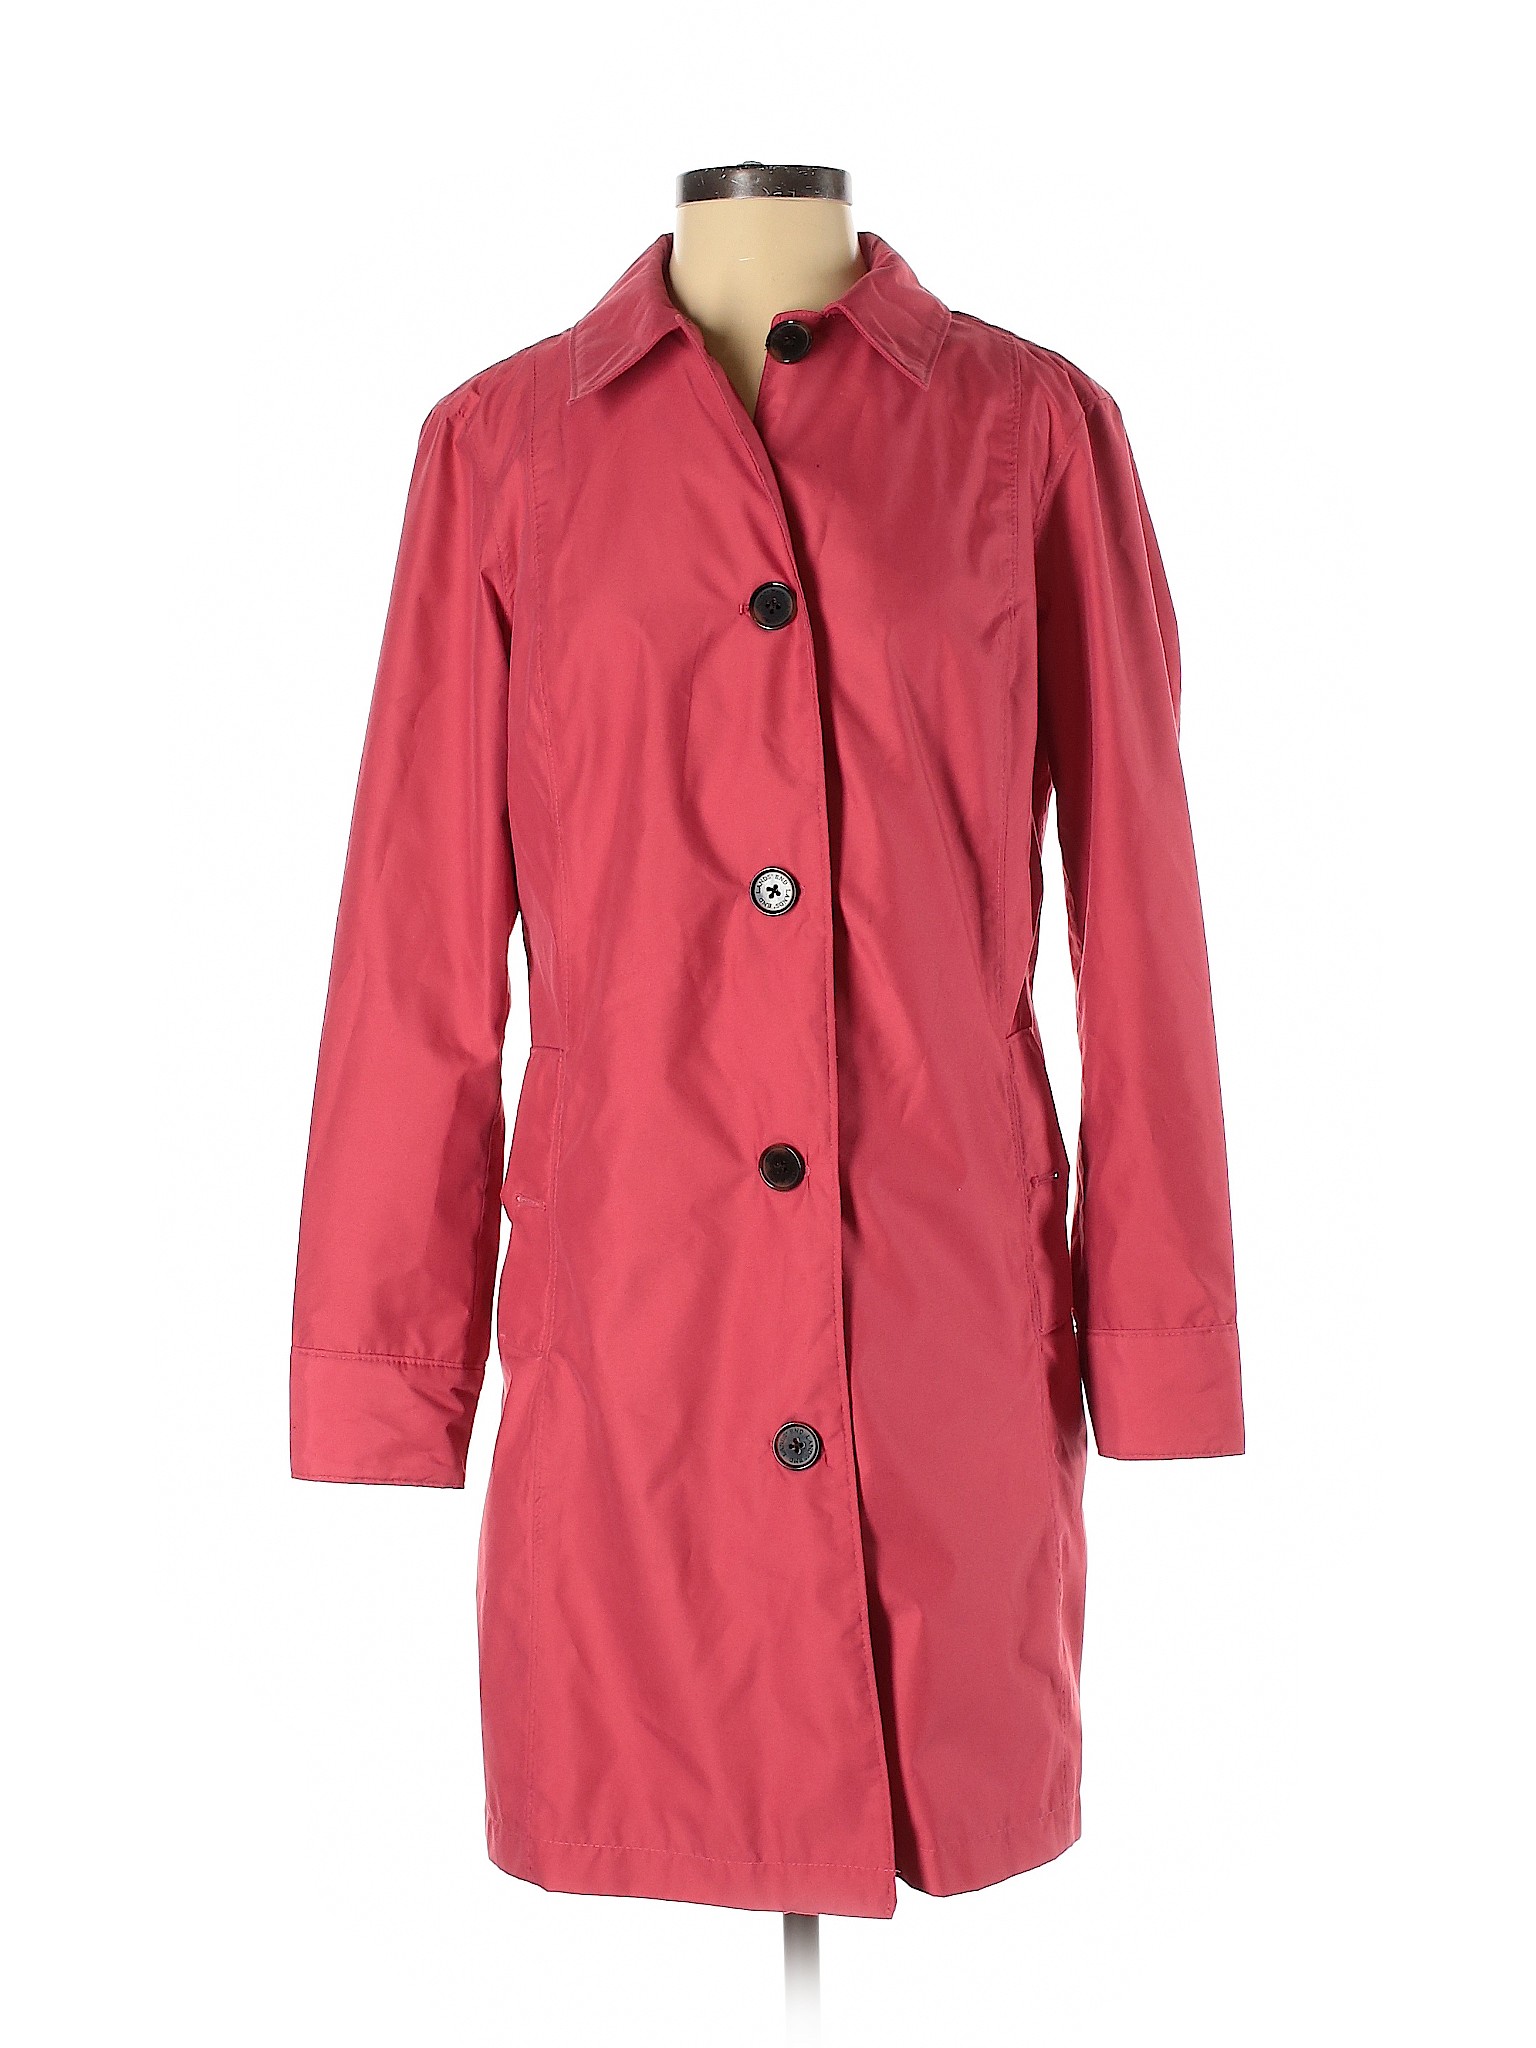 Lands' End Women Pink Jacket S | eBay